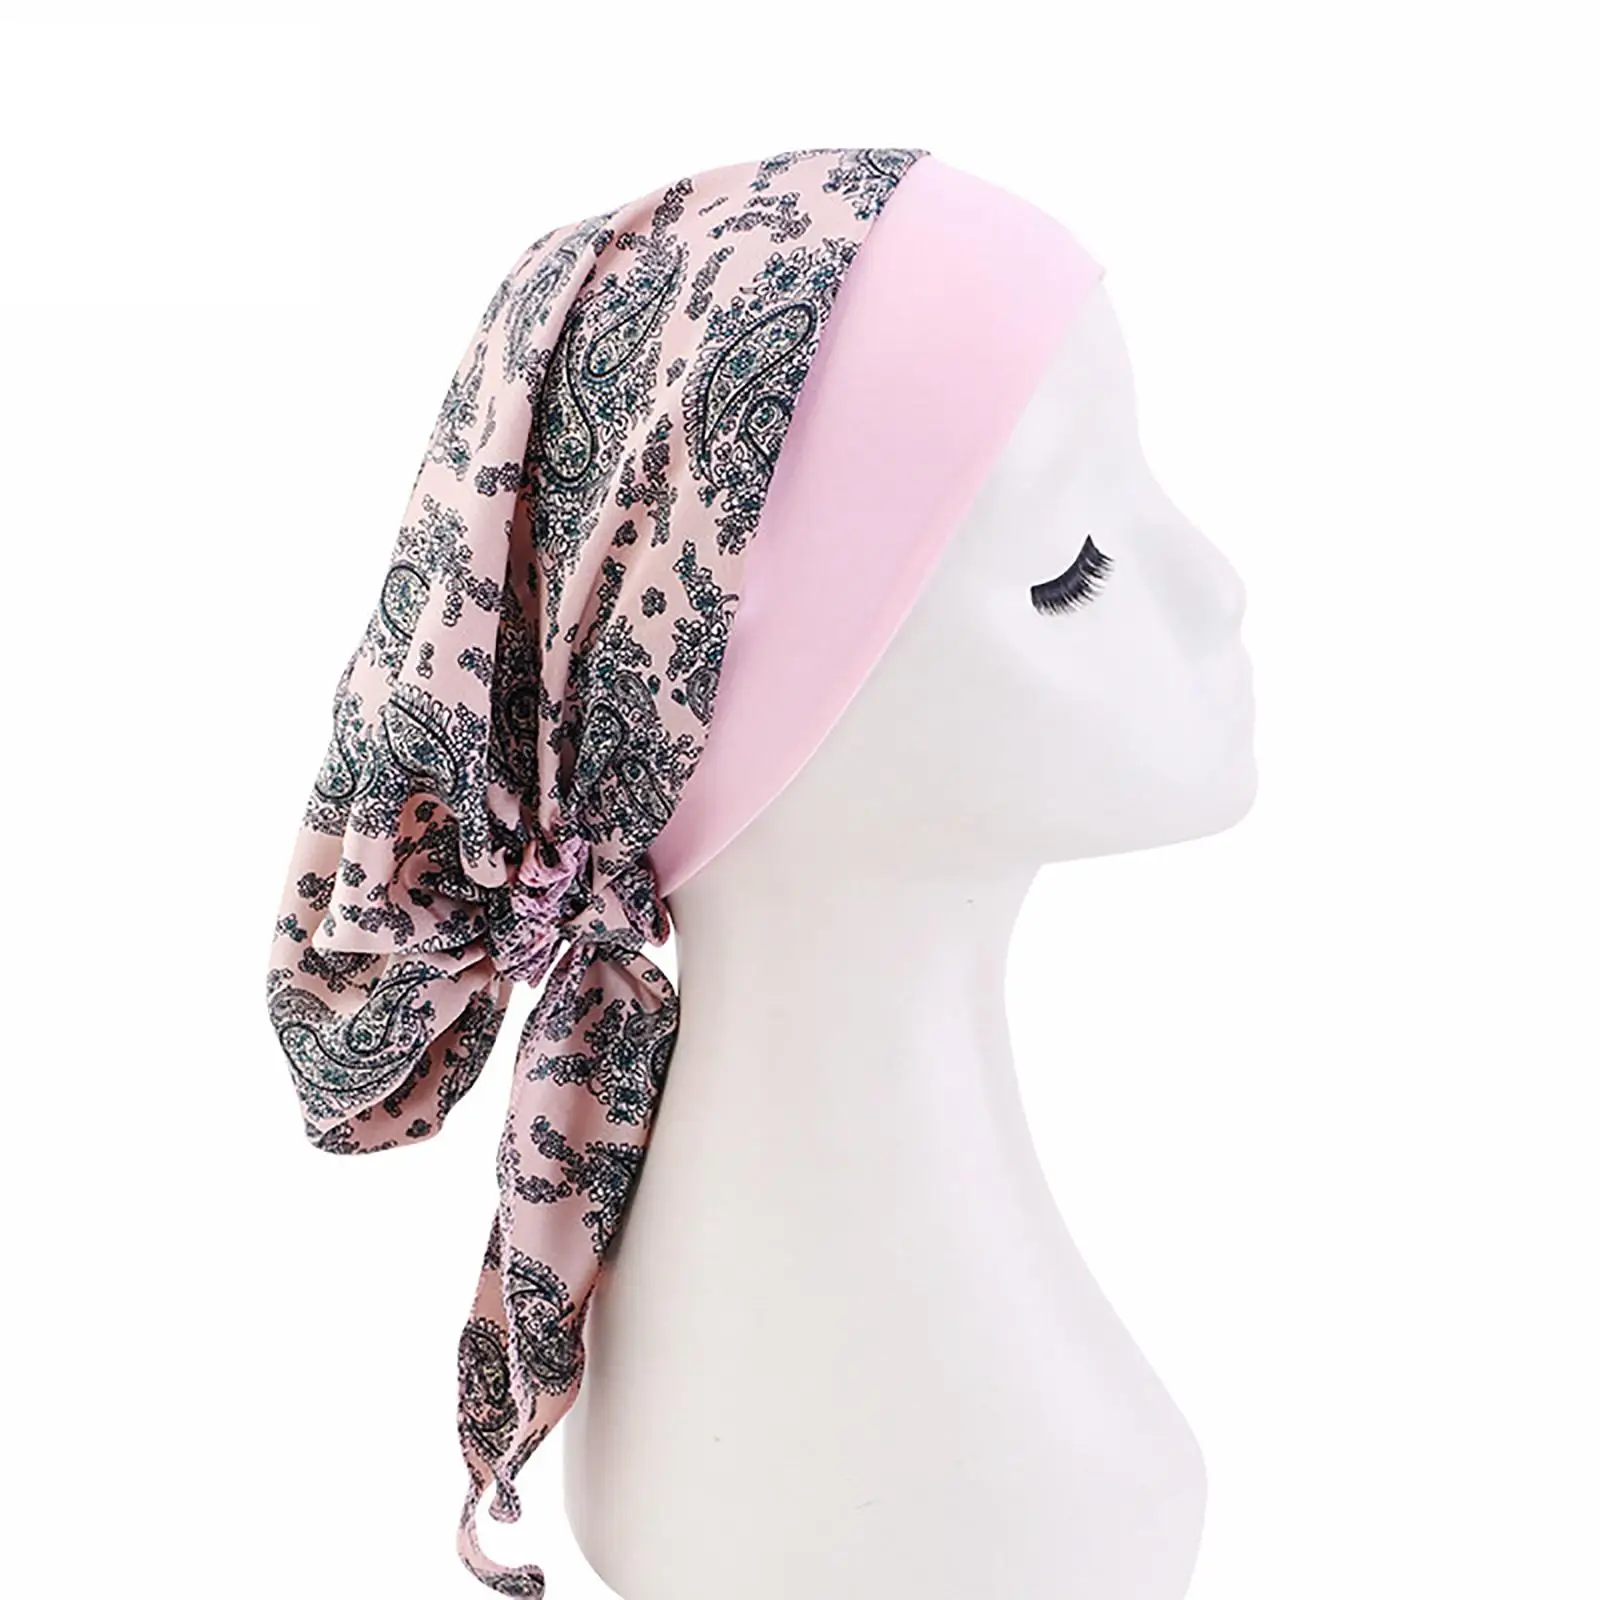 Fashion Women Beanie Hat Printed Artificial Silk Hair Care Turban Wrap Hair Cover Wrap for Cancer Hair Loss Sleep Festival Women